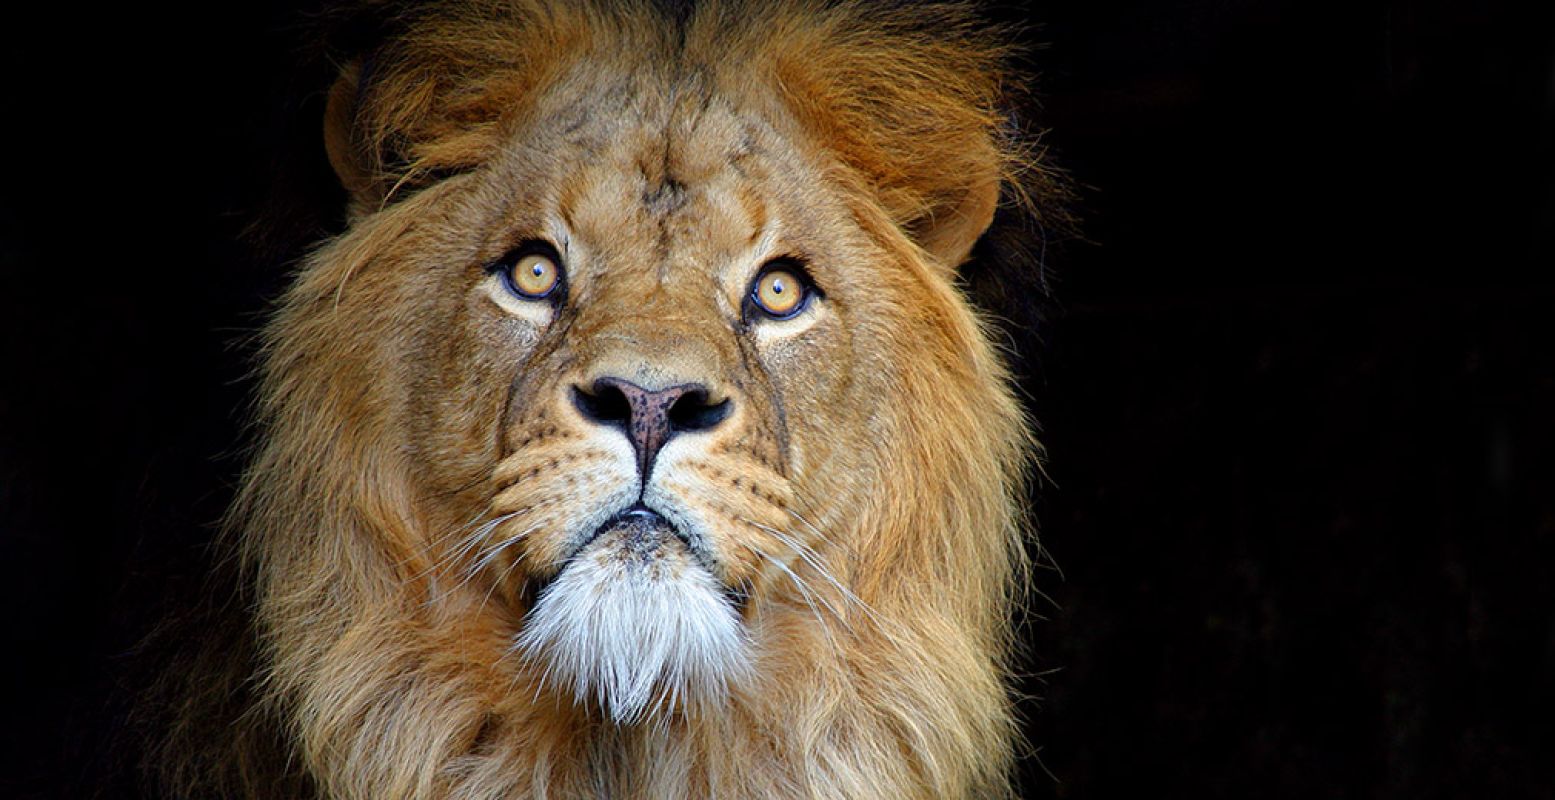 ARTIS is op zoek naar een nieuwe mannetjesleider voor bij de leeuwen. Foto: ARTIS © Ronald van Weeren.